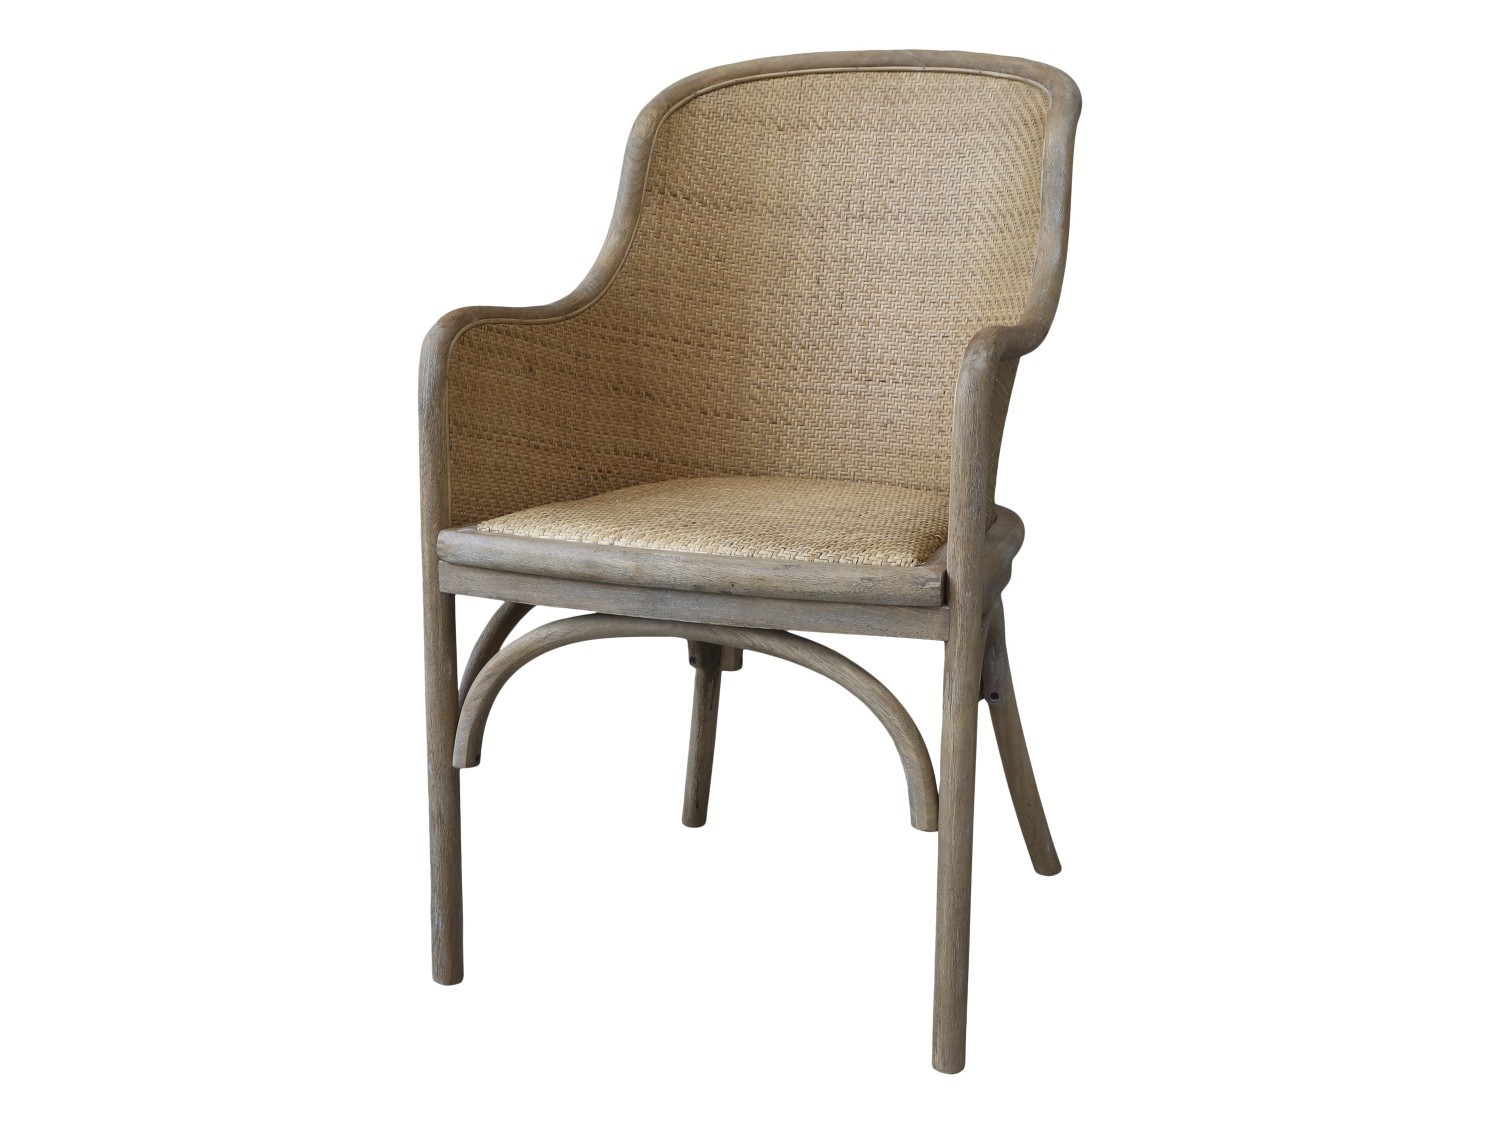 Antik dřevěná židle s výpletem a opěrkami Old French chair - 56*56*91 cm  Chic Antique